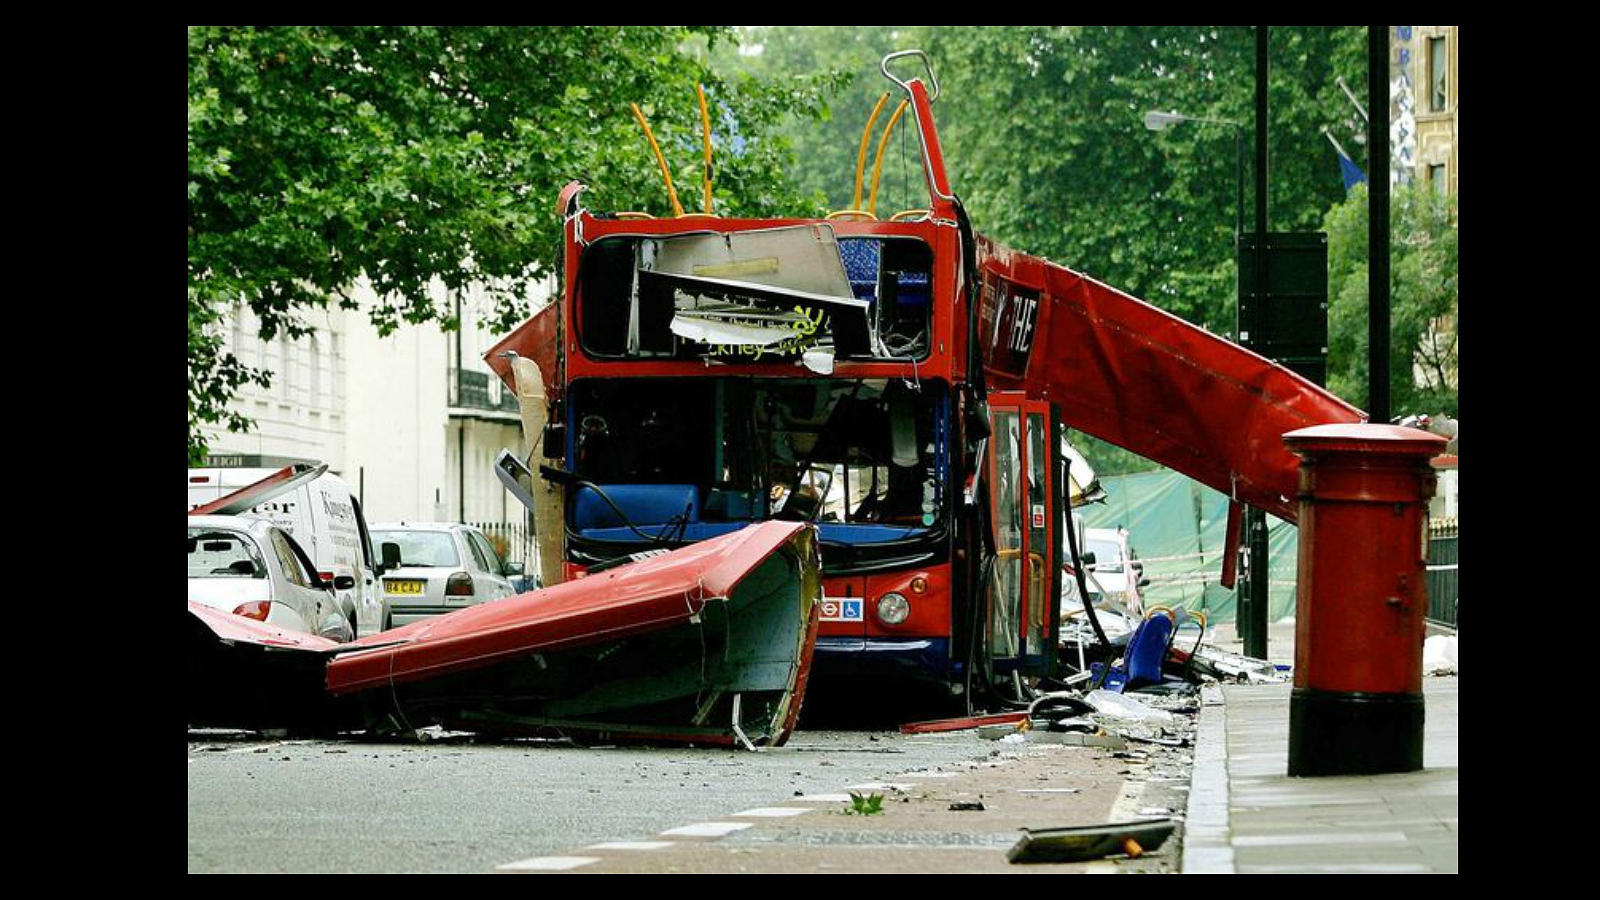 El 7 de julio de 2005, cuatro atentados suicidas coordinados en tres trenes subterráneos y un autobús causaron 56 muertos y 700 heridos. Los atentados fueron reivindicados por un grupo afiliado a Al Qaida